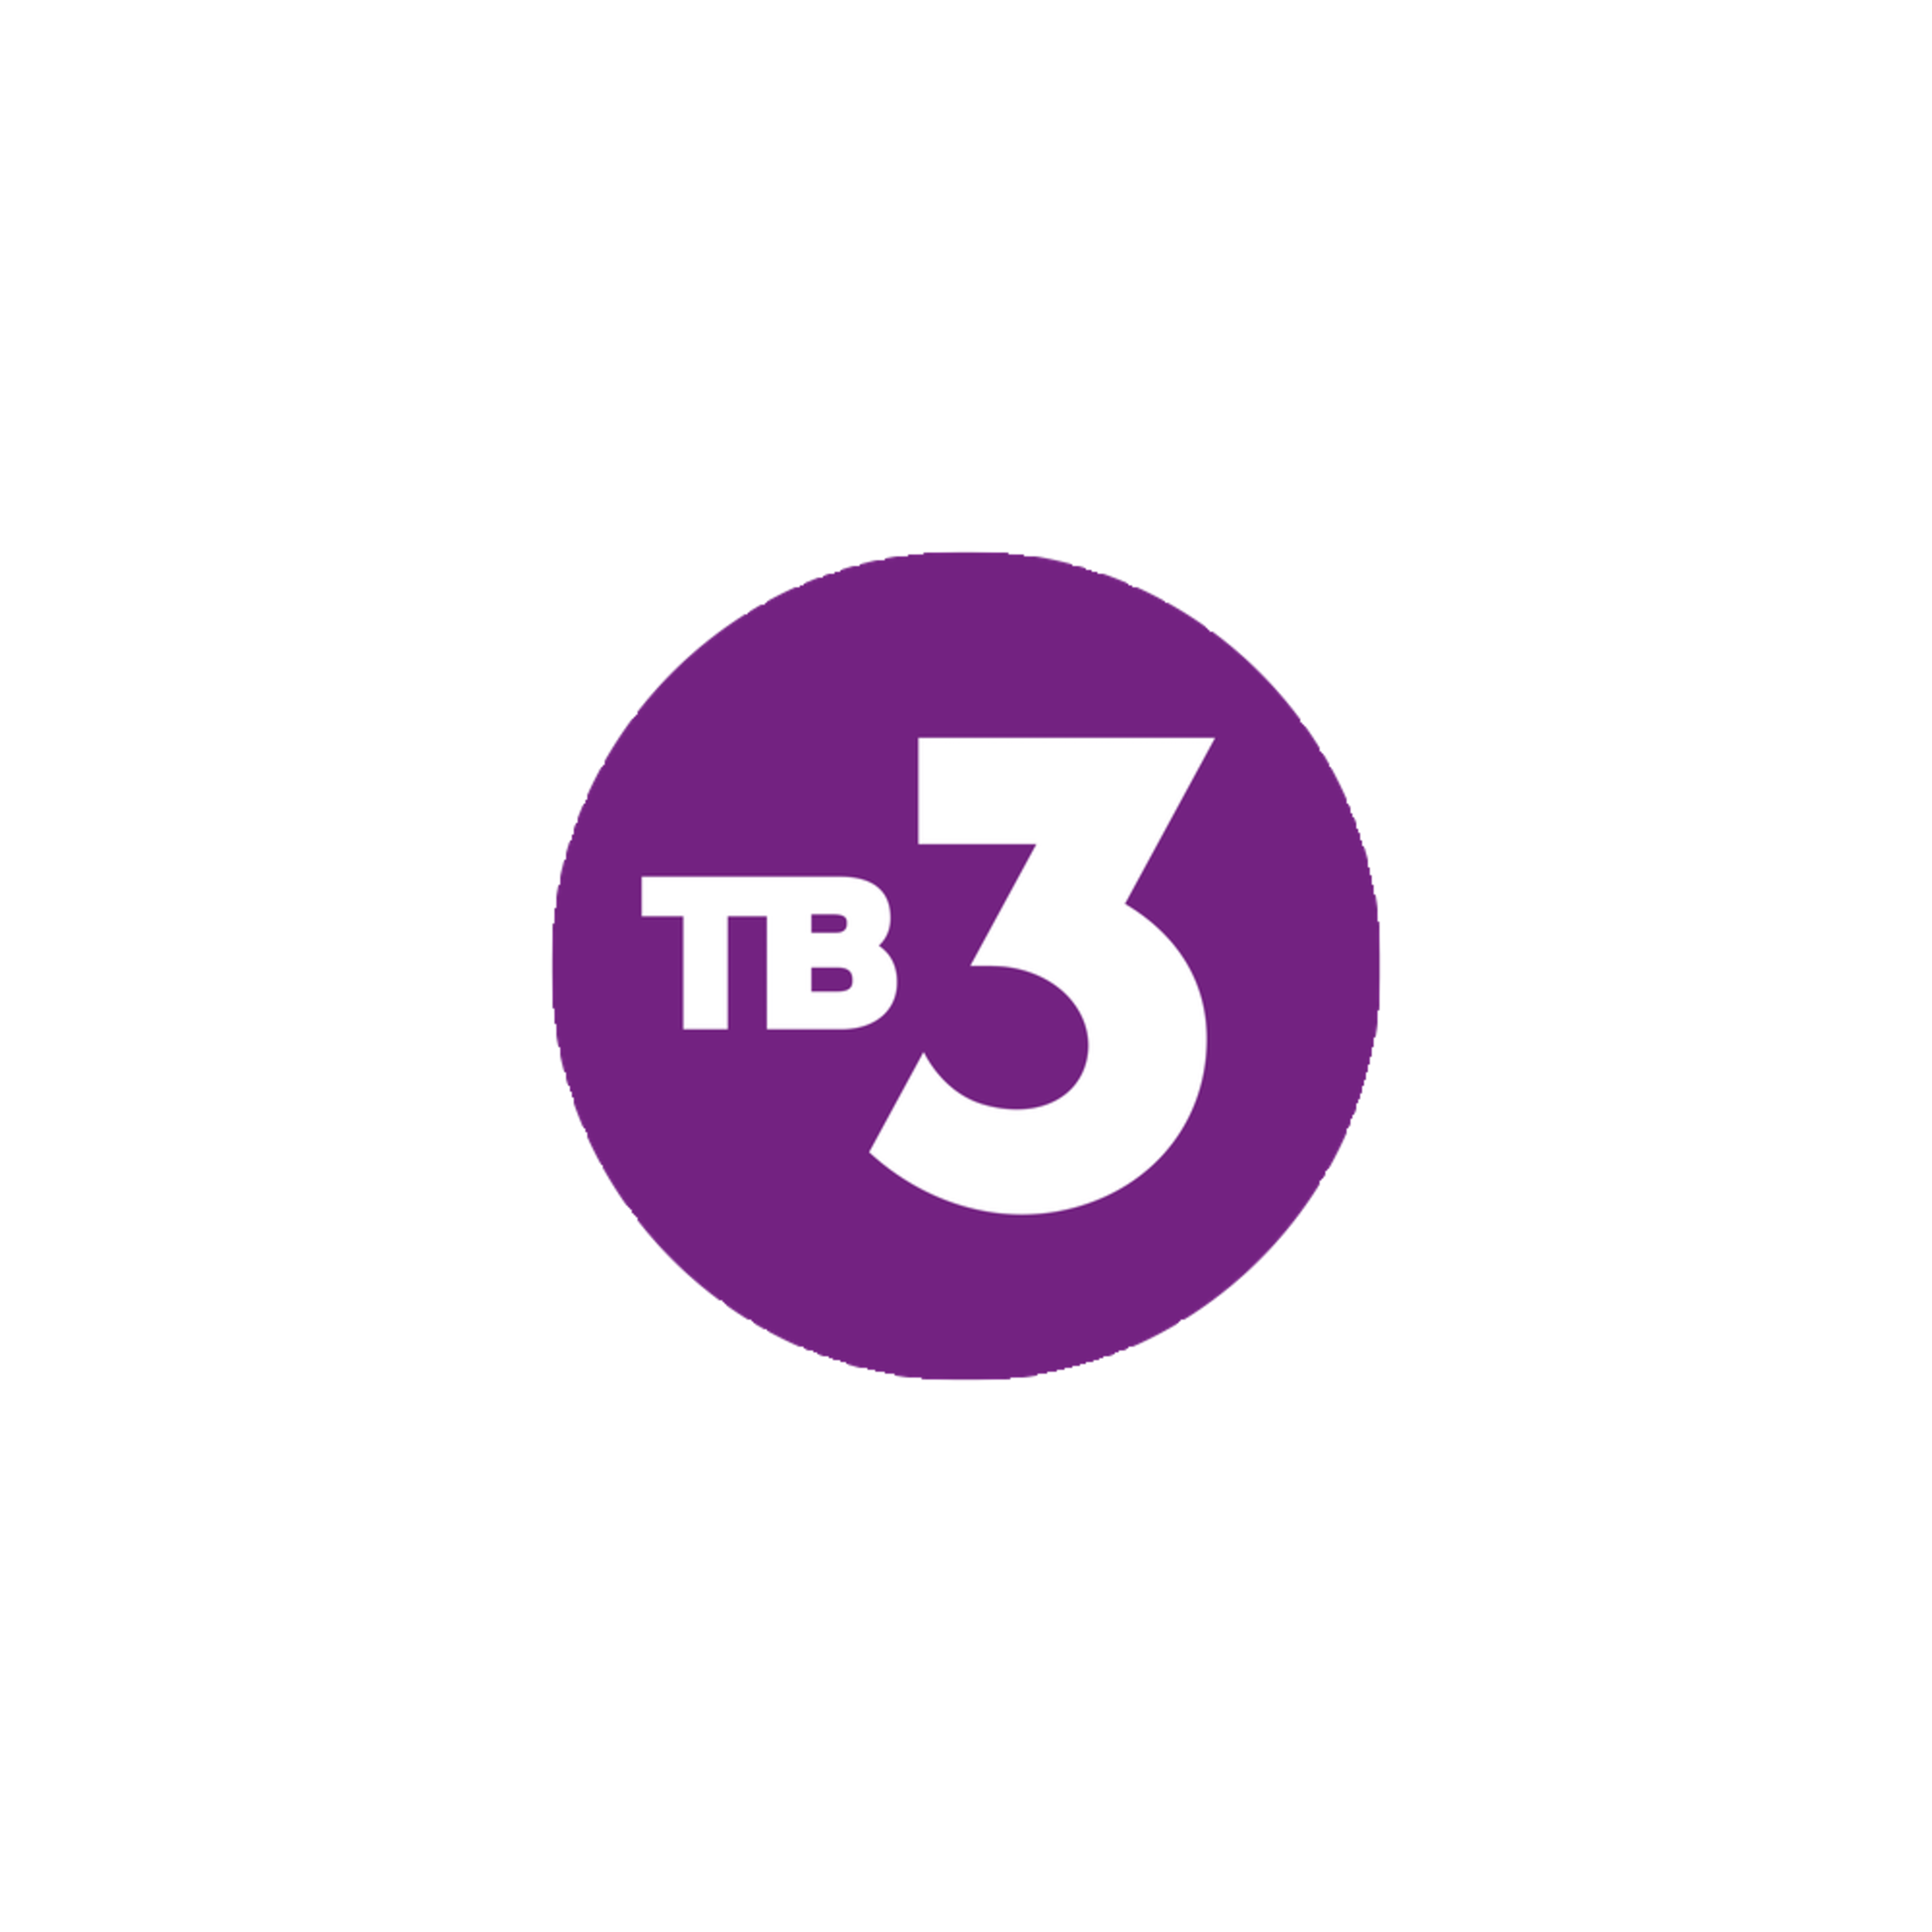 Тв3 первый канал. Тв3 логотип. Телеканал тв3. Логотип канала тв3. 3 Канал.